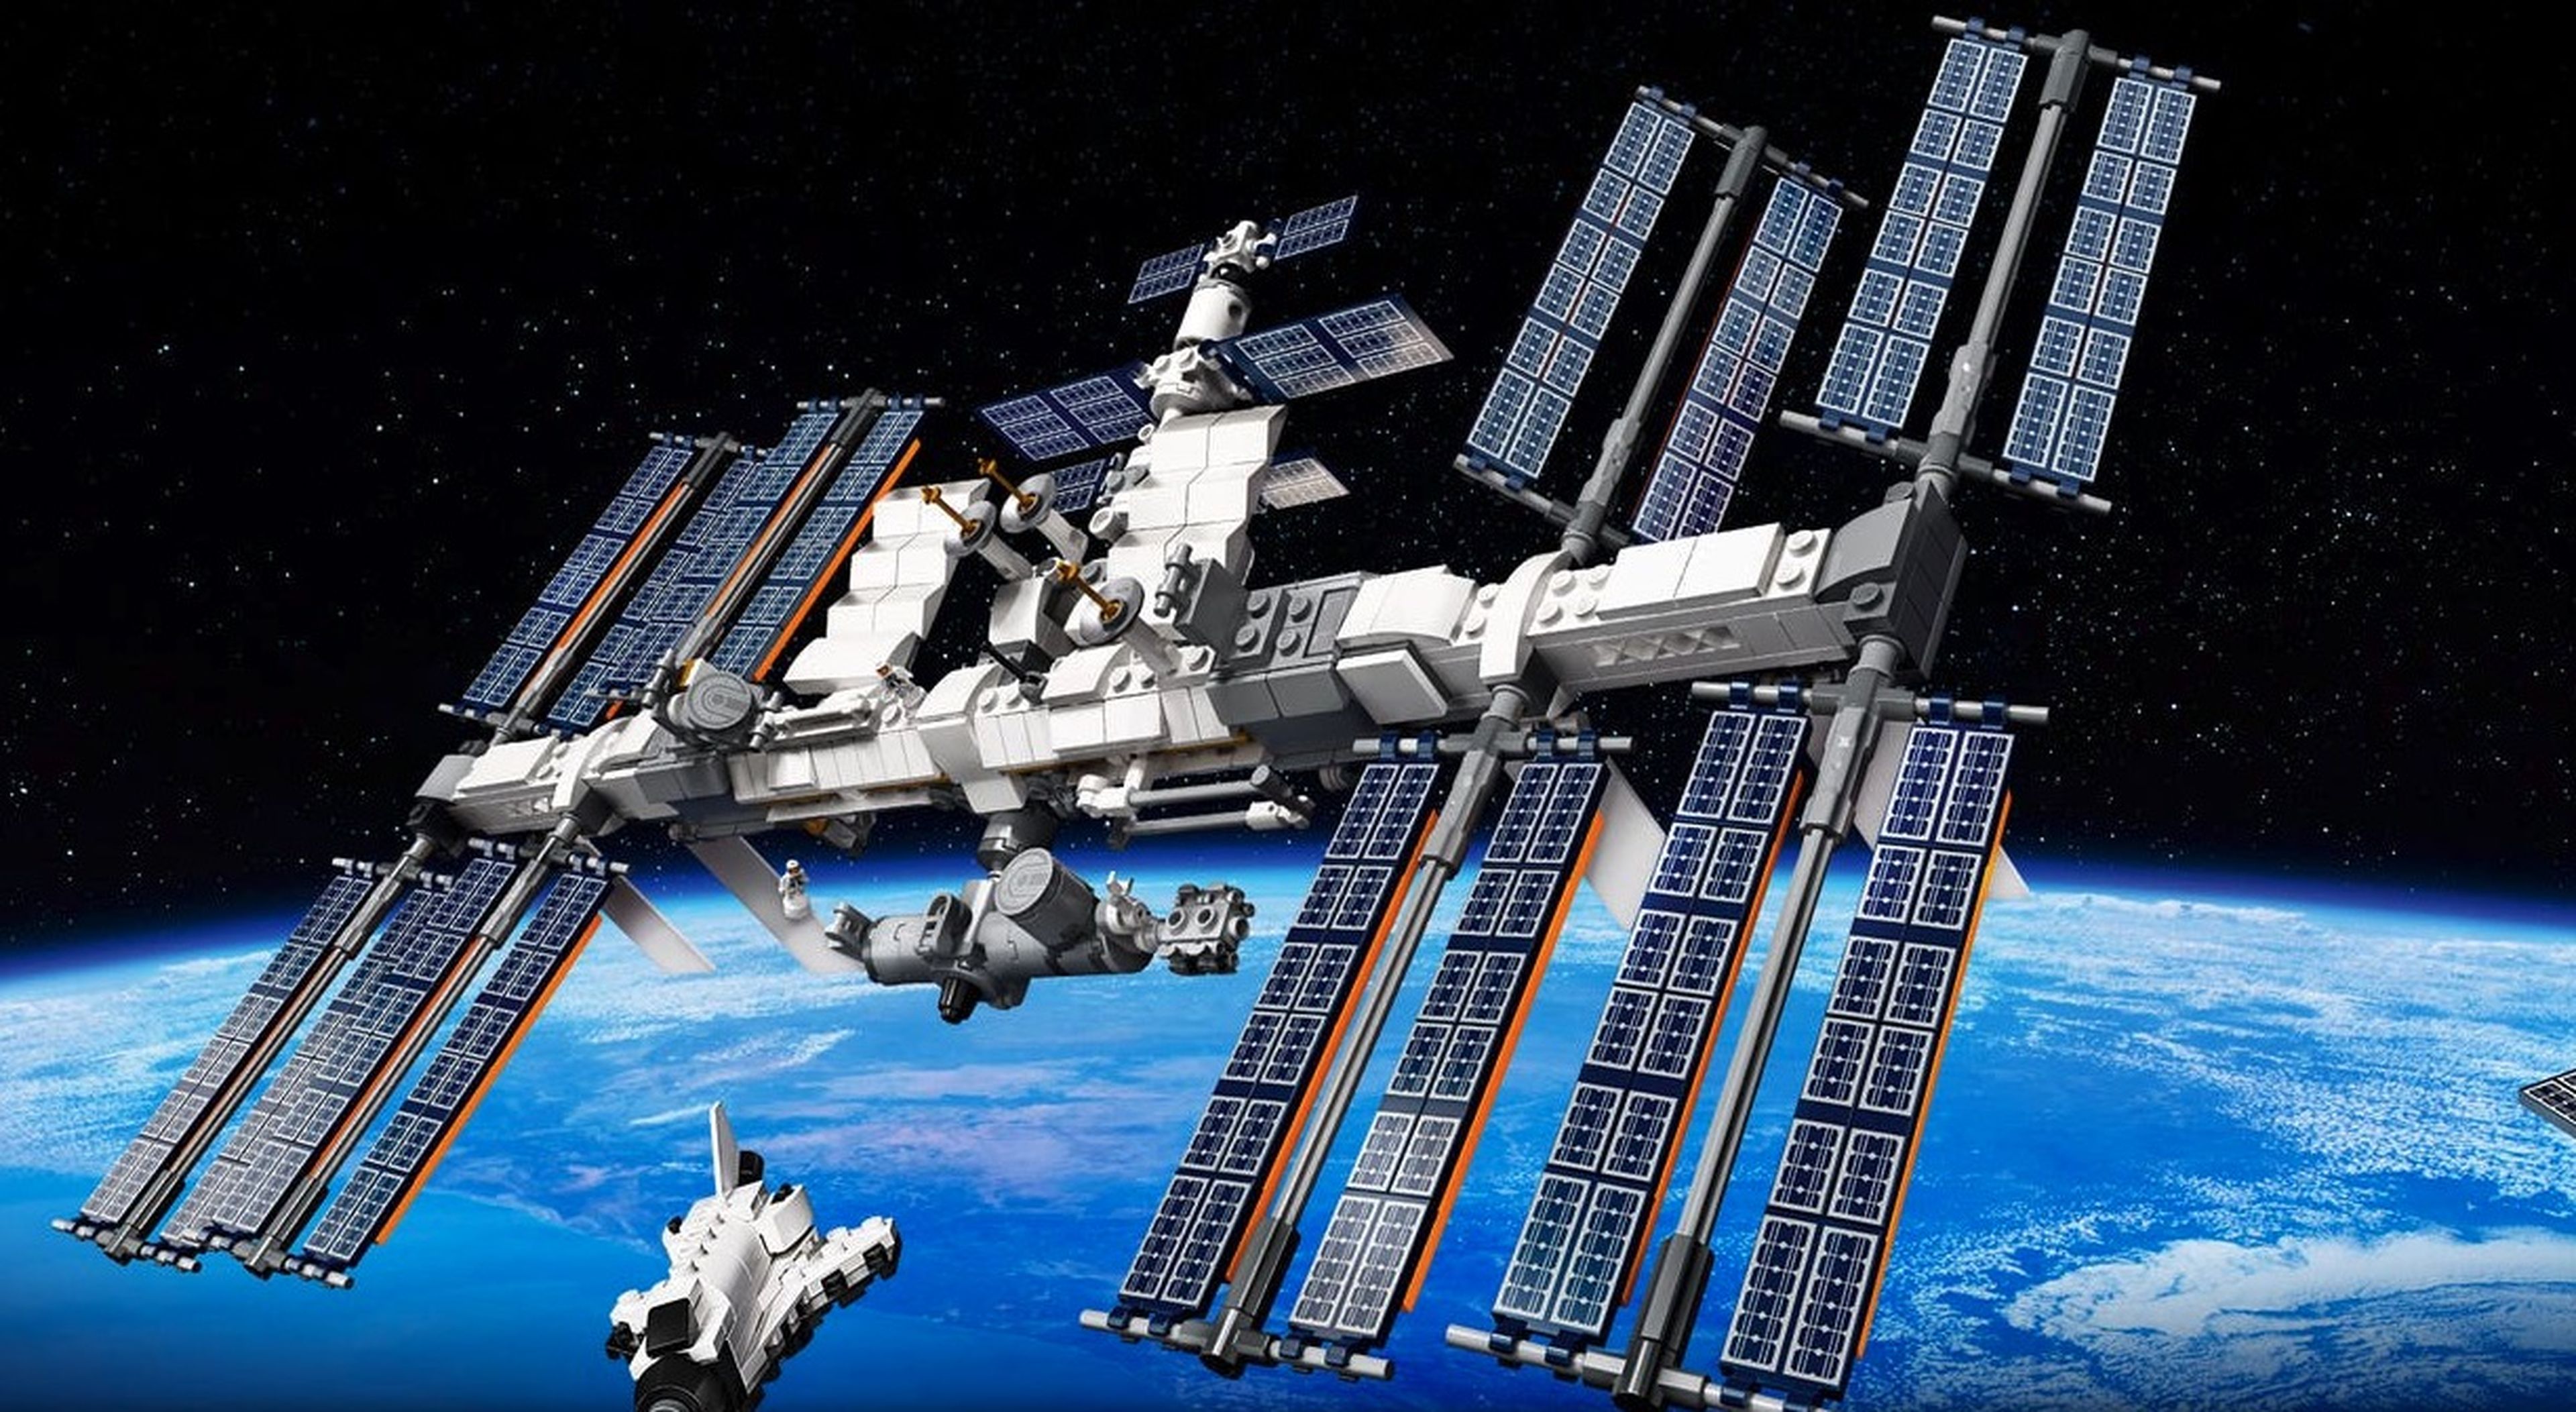 Sabías que hay un astronauta robot en la Estación Espacial Internacional? 13 datos curiosos y poco conocidos de la ISS | Computer Hoy